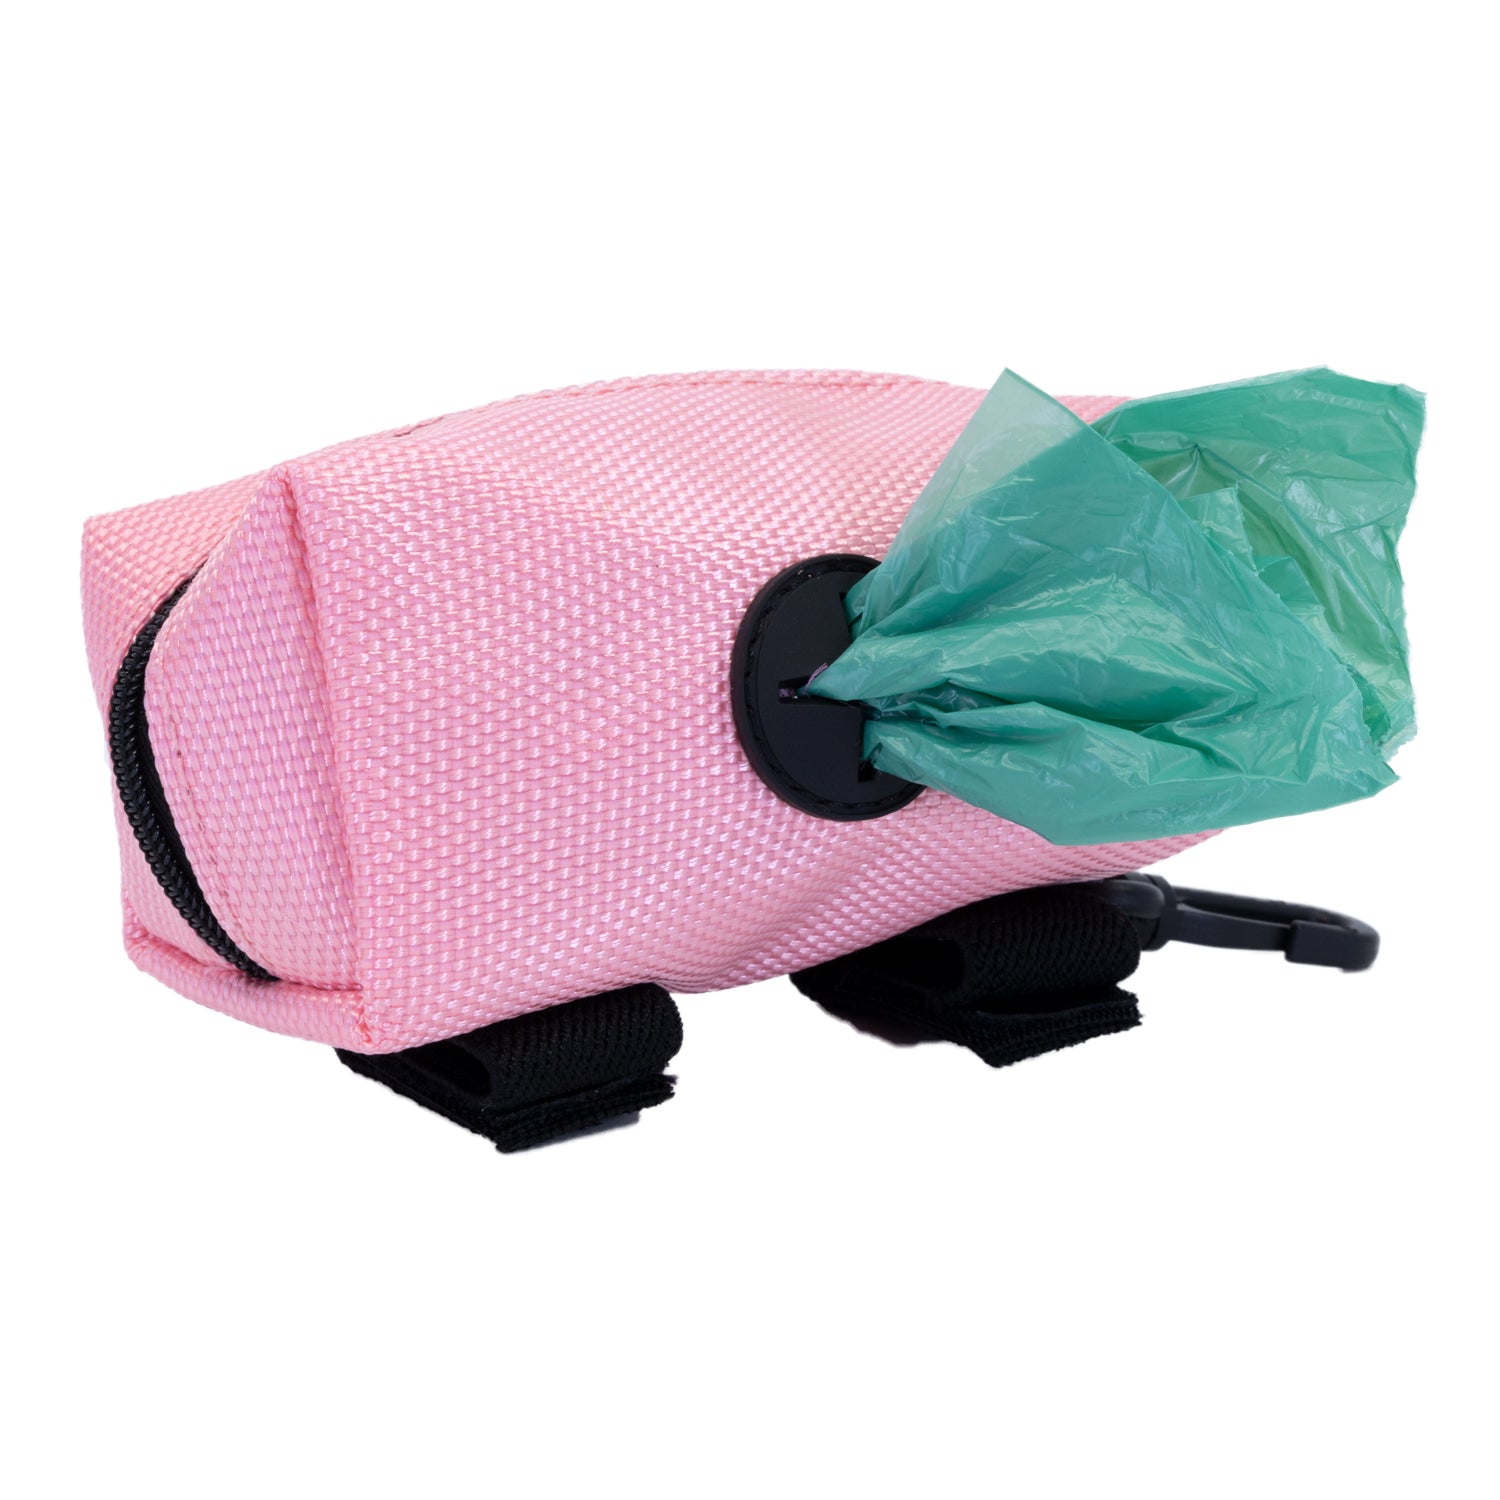 dog-bag-carrier-poop-bag-holder-pink-with-dog-bag